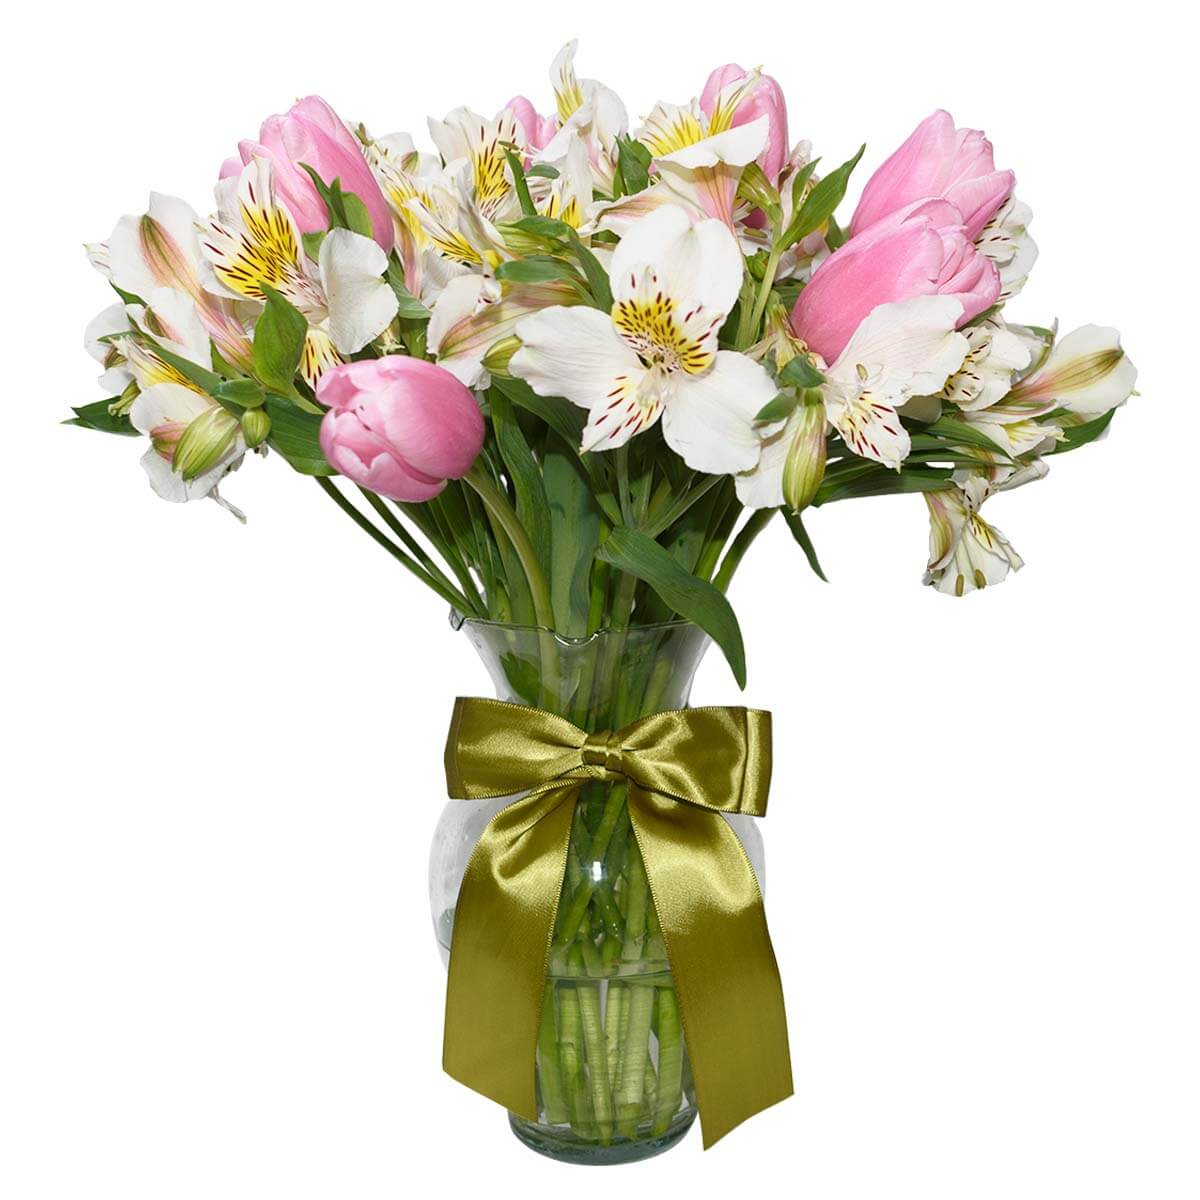 Florero de tulipanes y astromelias - Detalles a distancia | Envía flores